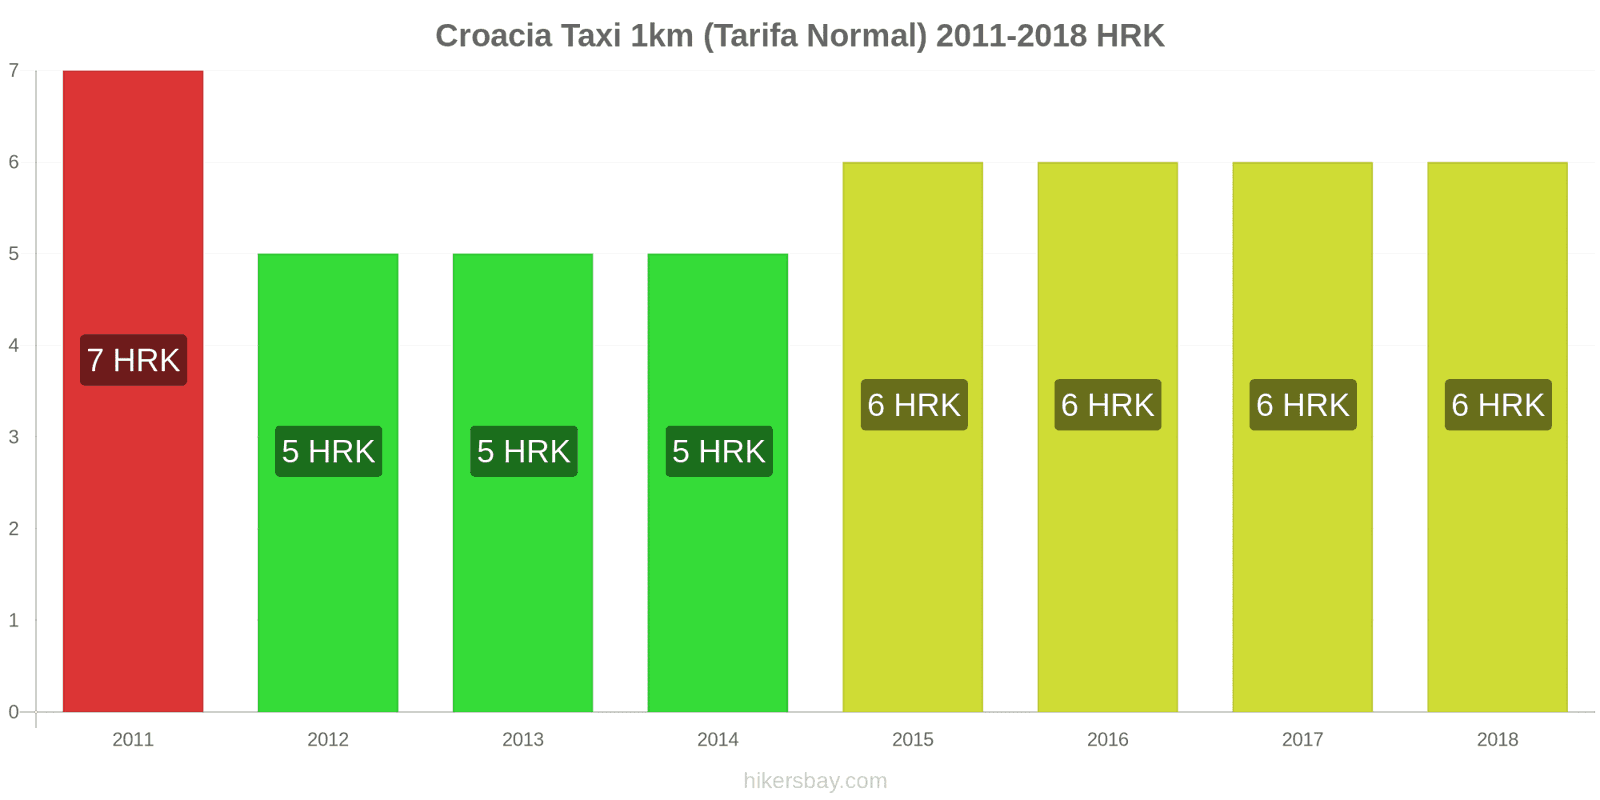 Croacia cambios de precios Taxi 1km (tarifa normal) hikersbay.com